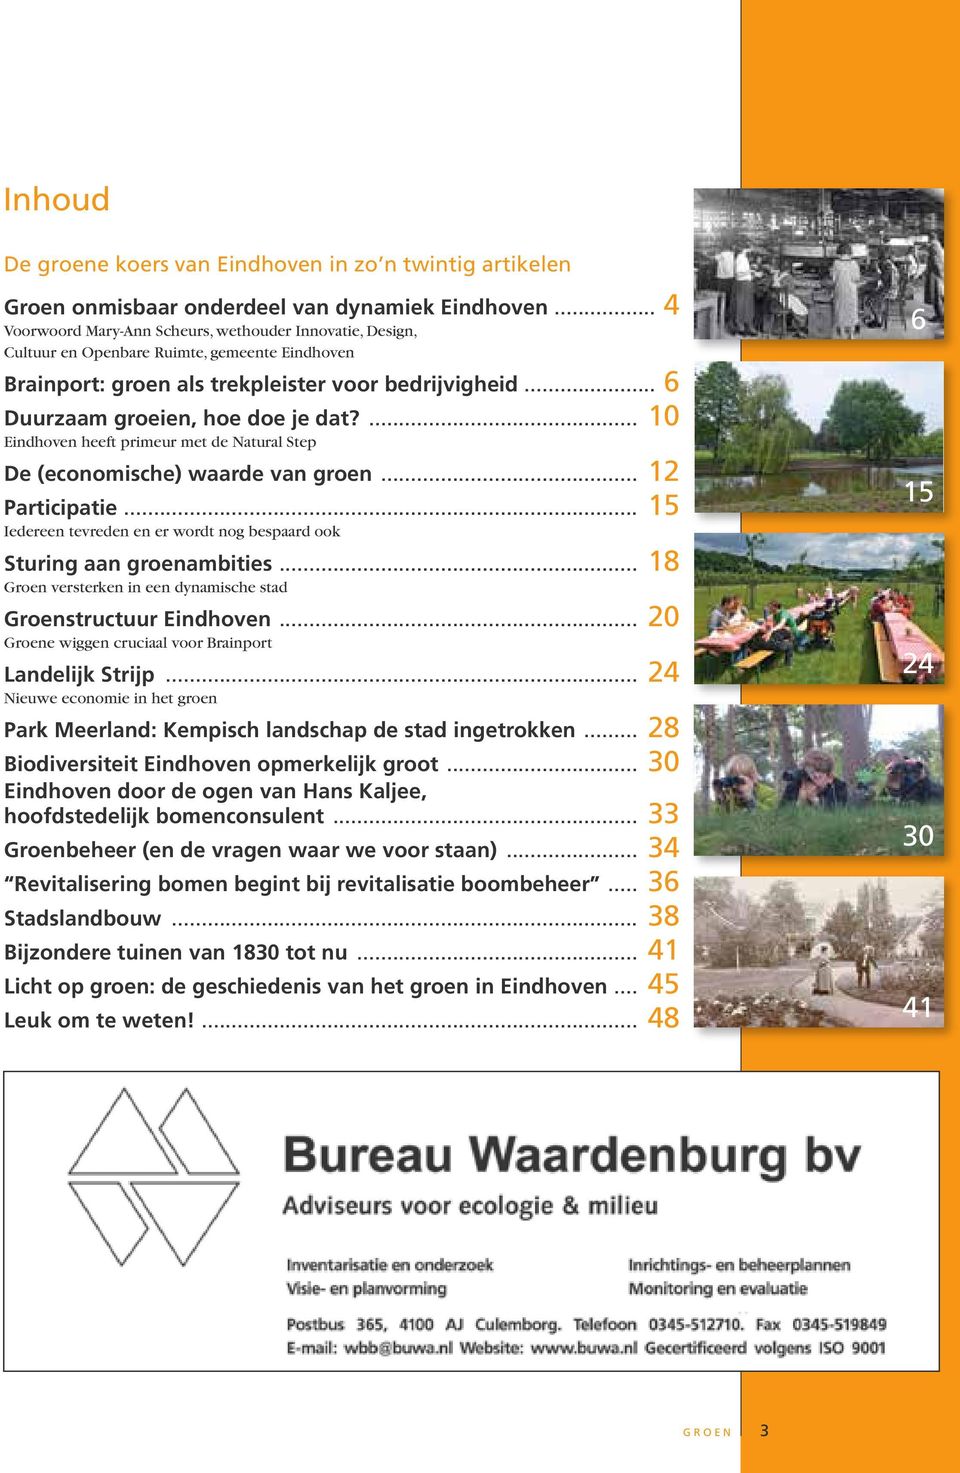 ... 10 Eindhoven heeft primeur met de Natural Step De (economische) waarde van groen... 12 Participatie... 15 Iedereen tevreden en er wordt nog bespaard ook Sturing aan groenambities.